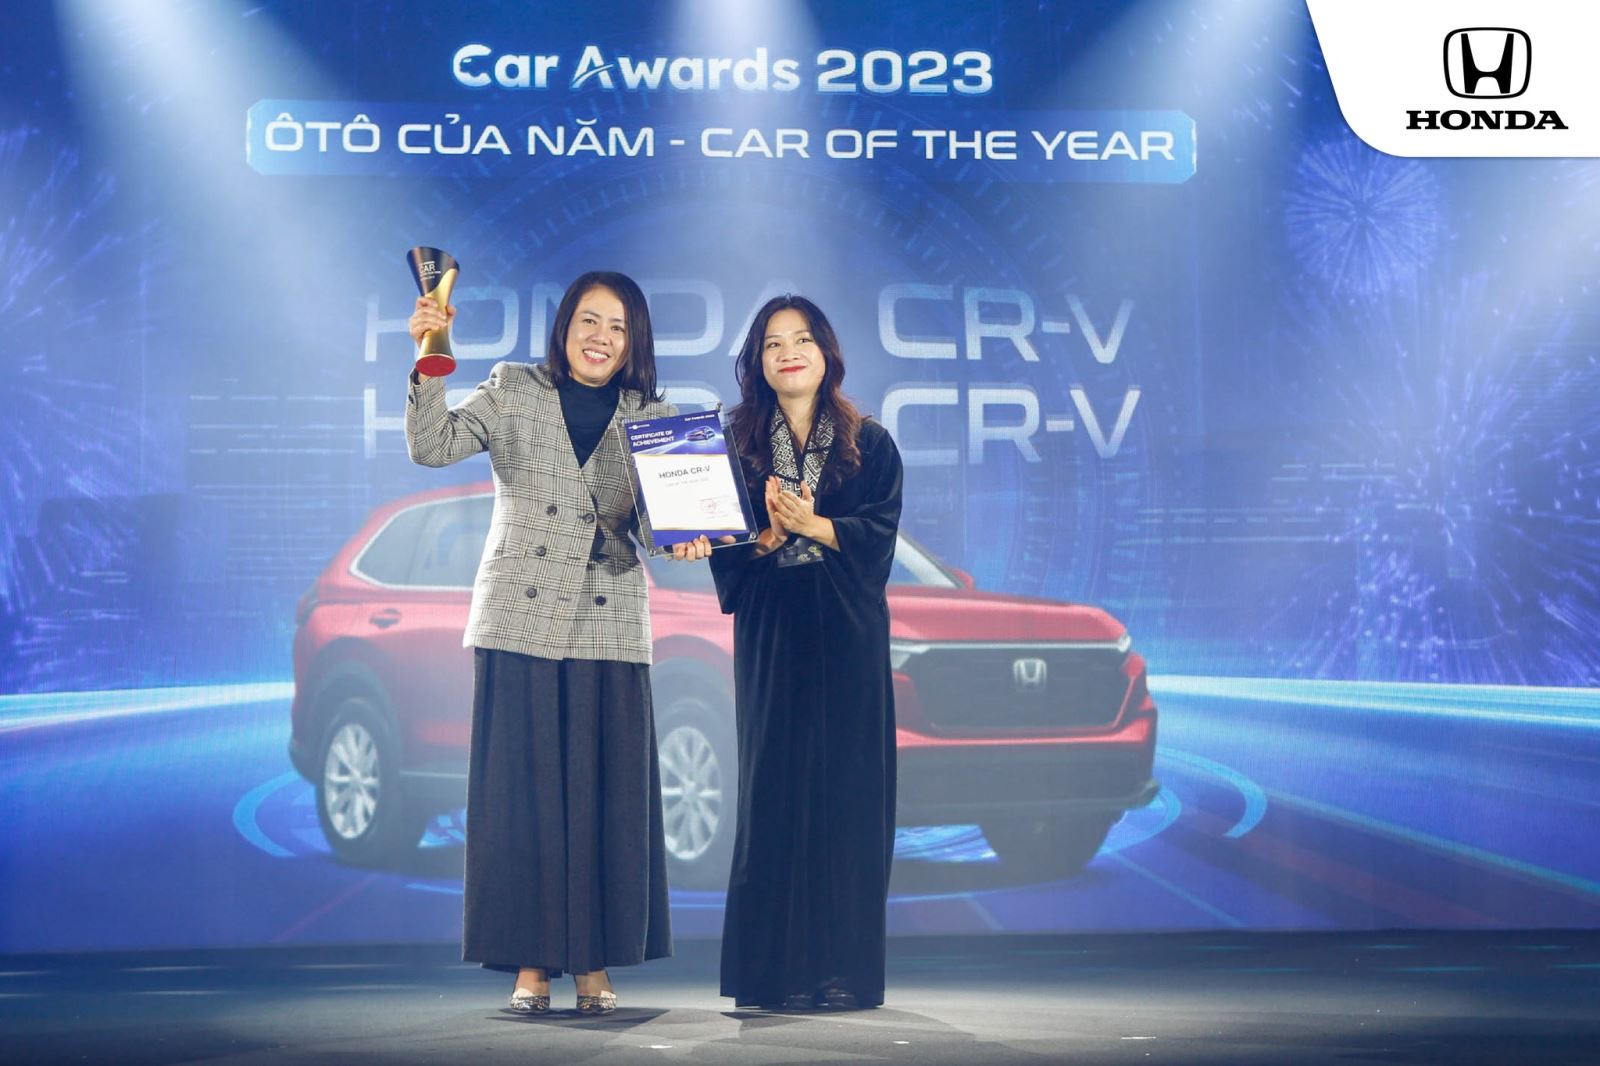 Đại diện Honda nhận giải thưởng Ôtô của năm 2023 cho mẫu Honda CR-V